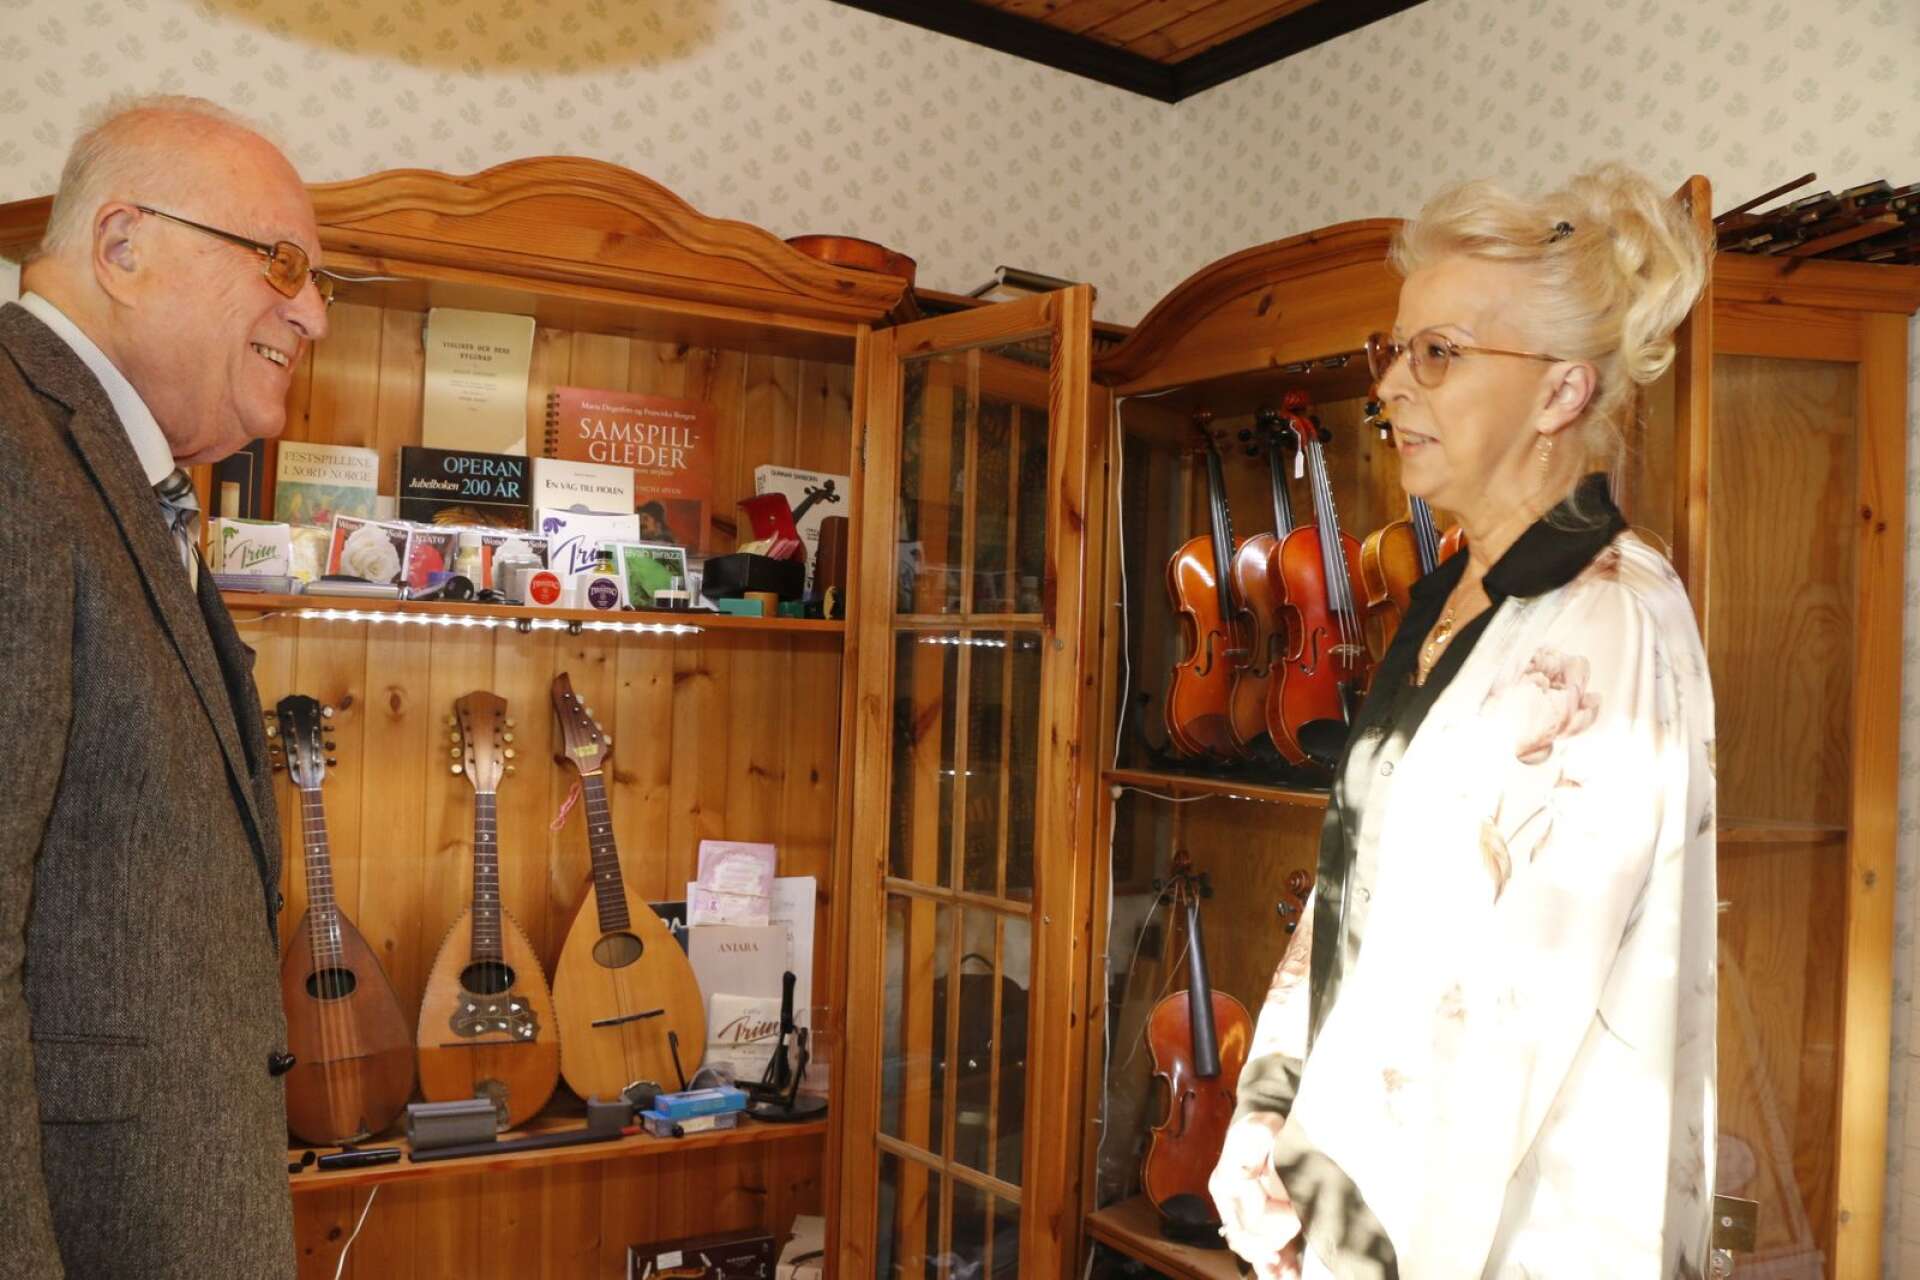 Strängar, instrument, böcker och verktyg finns i musikrummet hos paret Steinert.